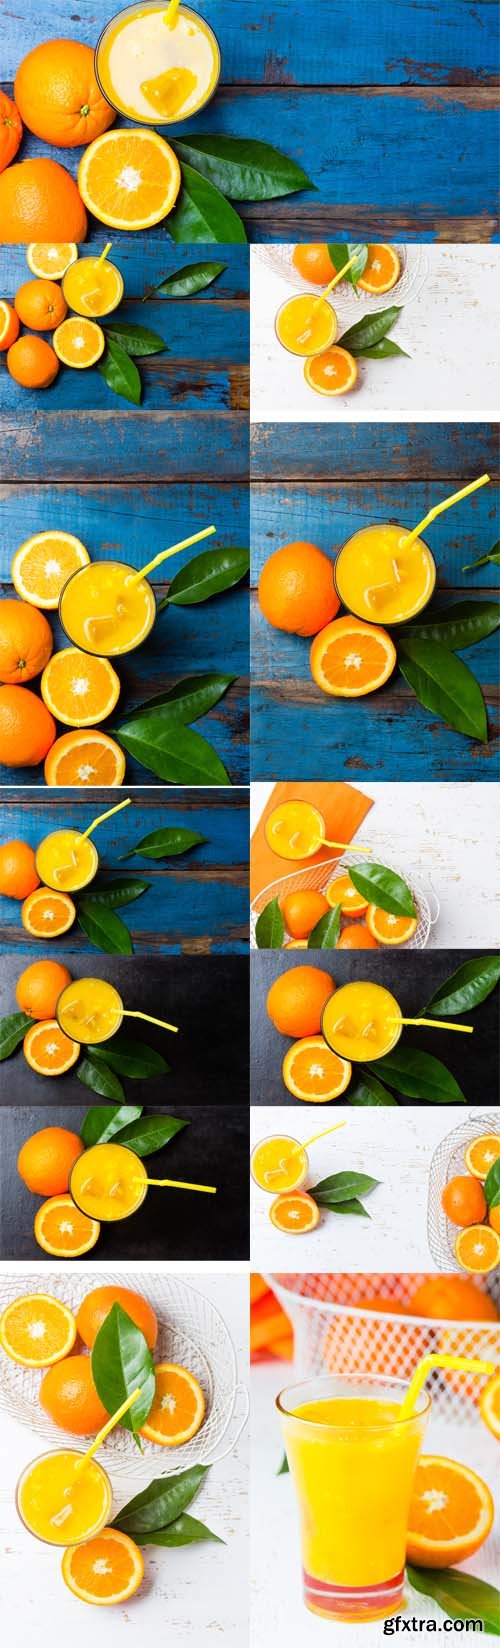 Photo Set - Glass of Freshly Squeezed Orange Juice and Fresh Oranges